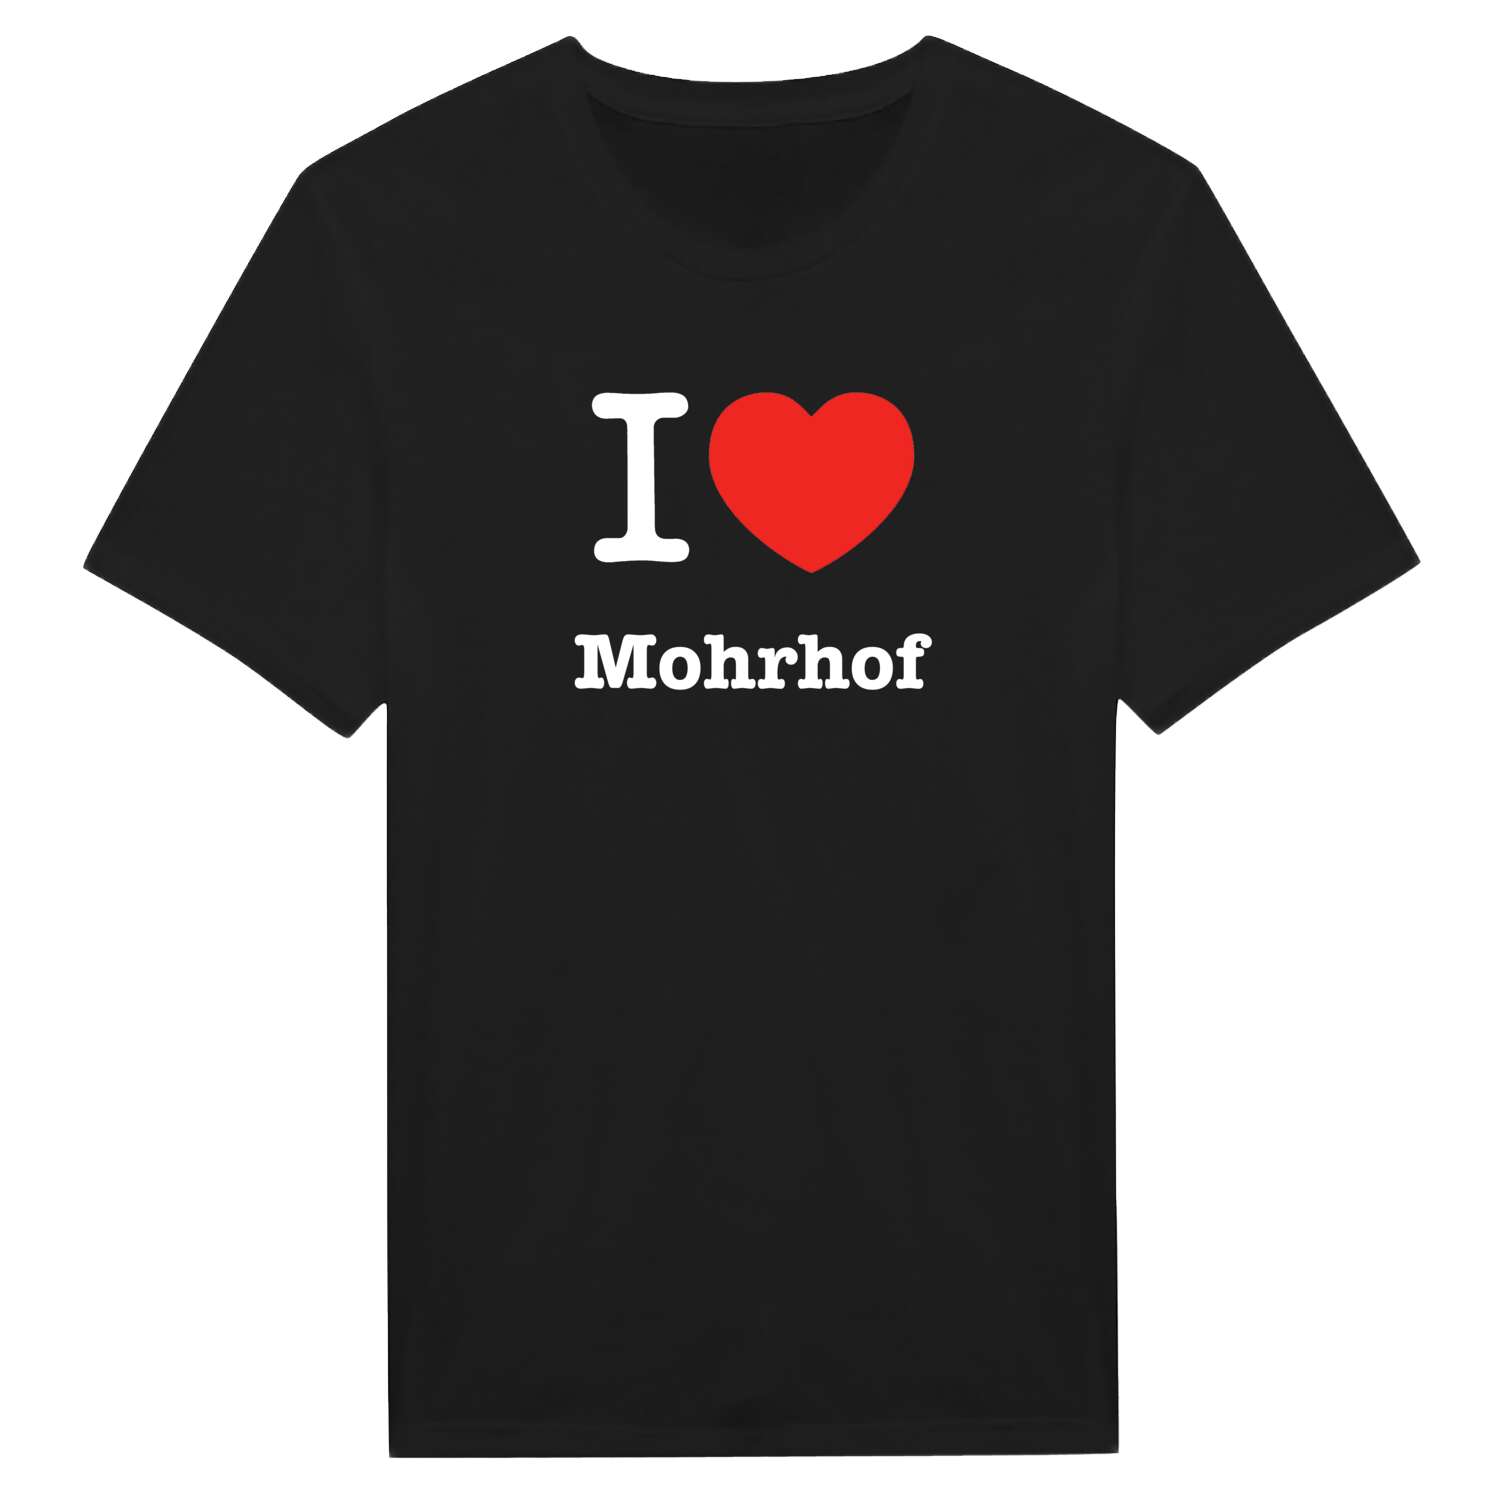 Mohrhof T-Shirt »I love«